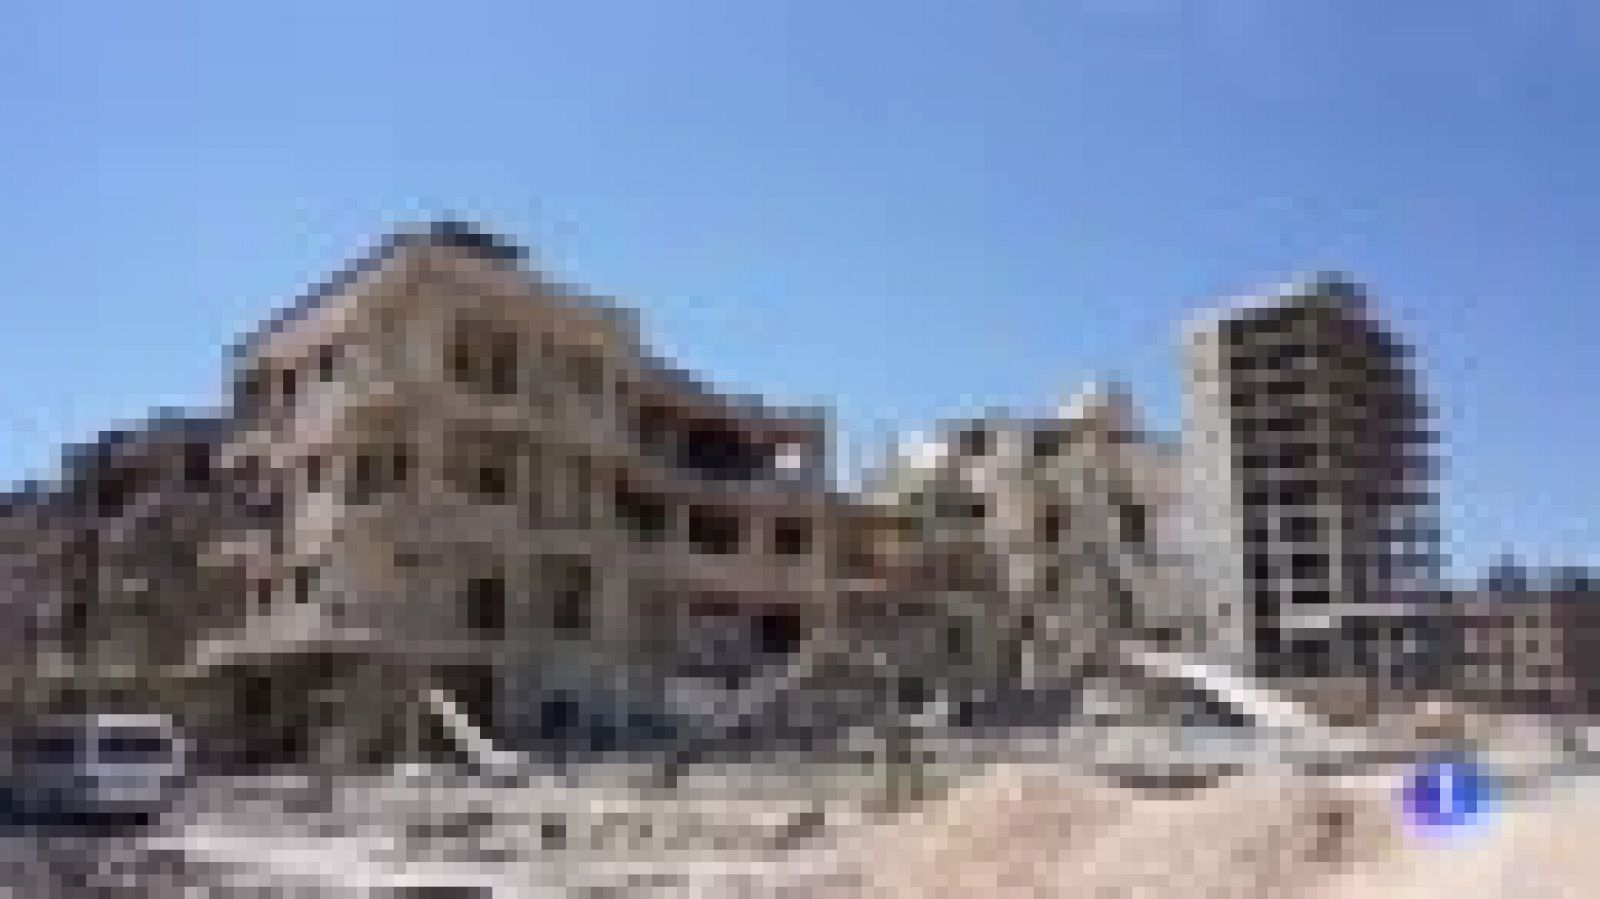 Guerra en Siria: Los inspectores de la OPAQ ya han llegado a Duma, según medios sirios